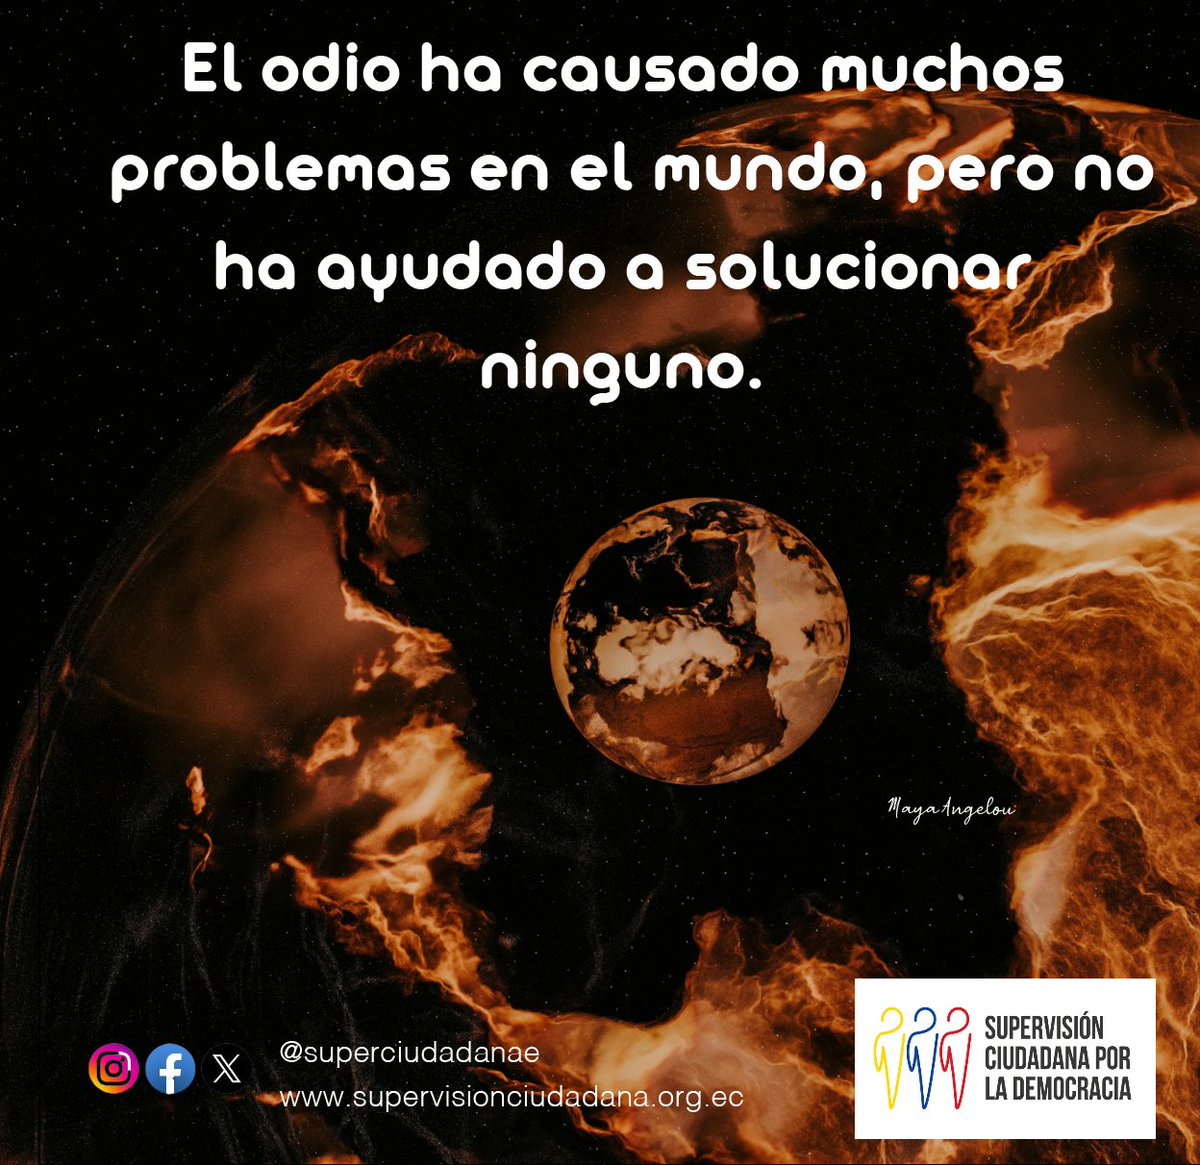 #FelizLunes

#NoAlOdio
#FraseDelDía 

#PazNoGuerra #Educacion #Dialogo #Conocimiento #Anticorrupción #Etica #Valores #Honestidad #Dialogo #Respeto #Ecuador #Quito #Paz #Disculpas #Aprender